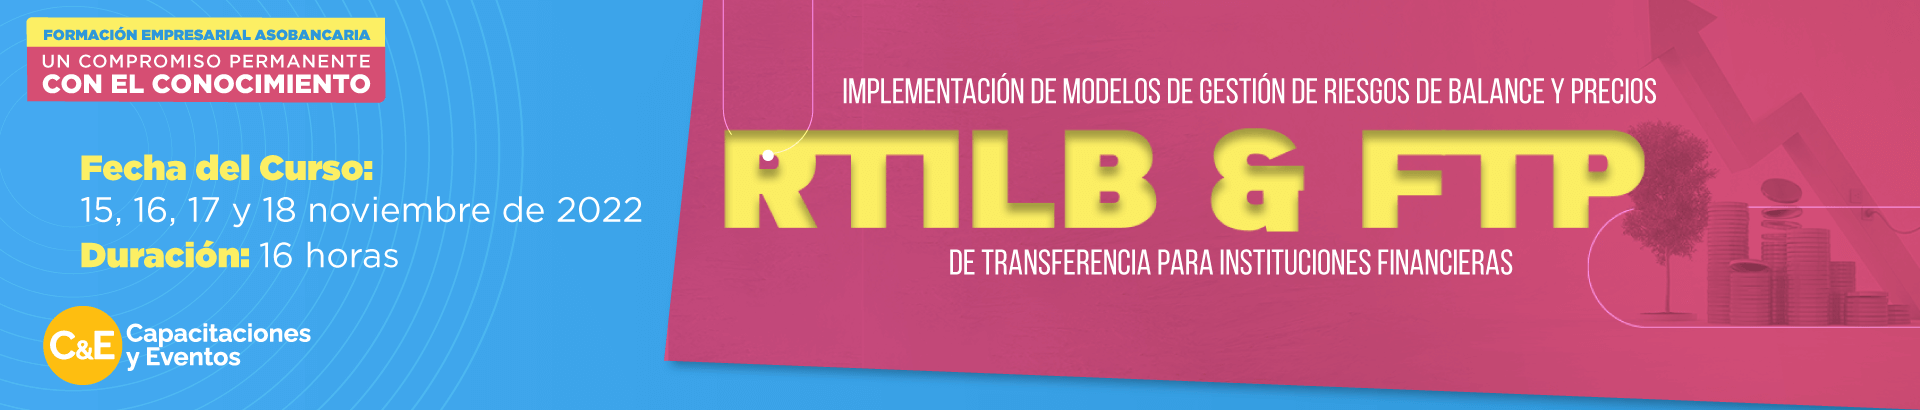 Implementación de Modelos de Gestión de Riesgos de Balance (RTILB) y Precios de Transferencia (FTP) para Instituciones Financieras